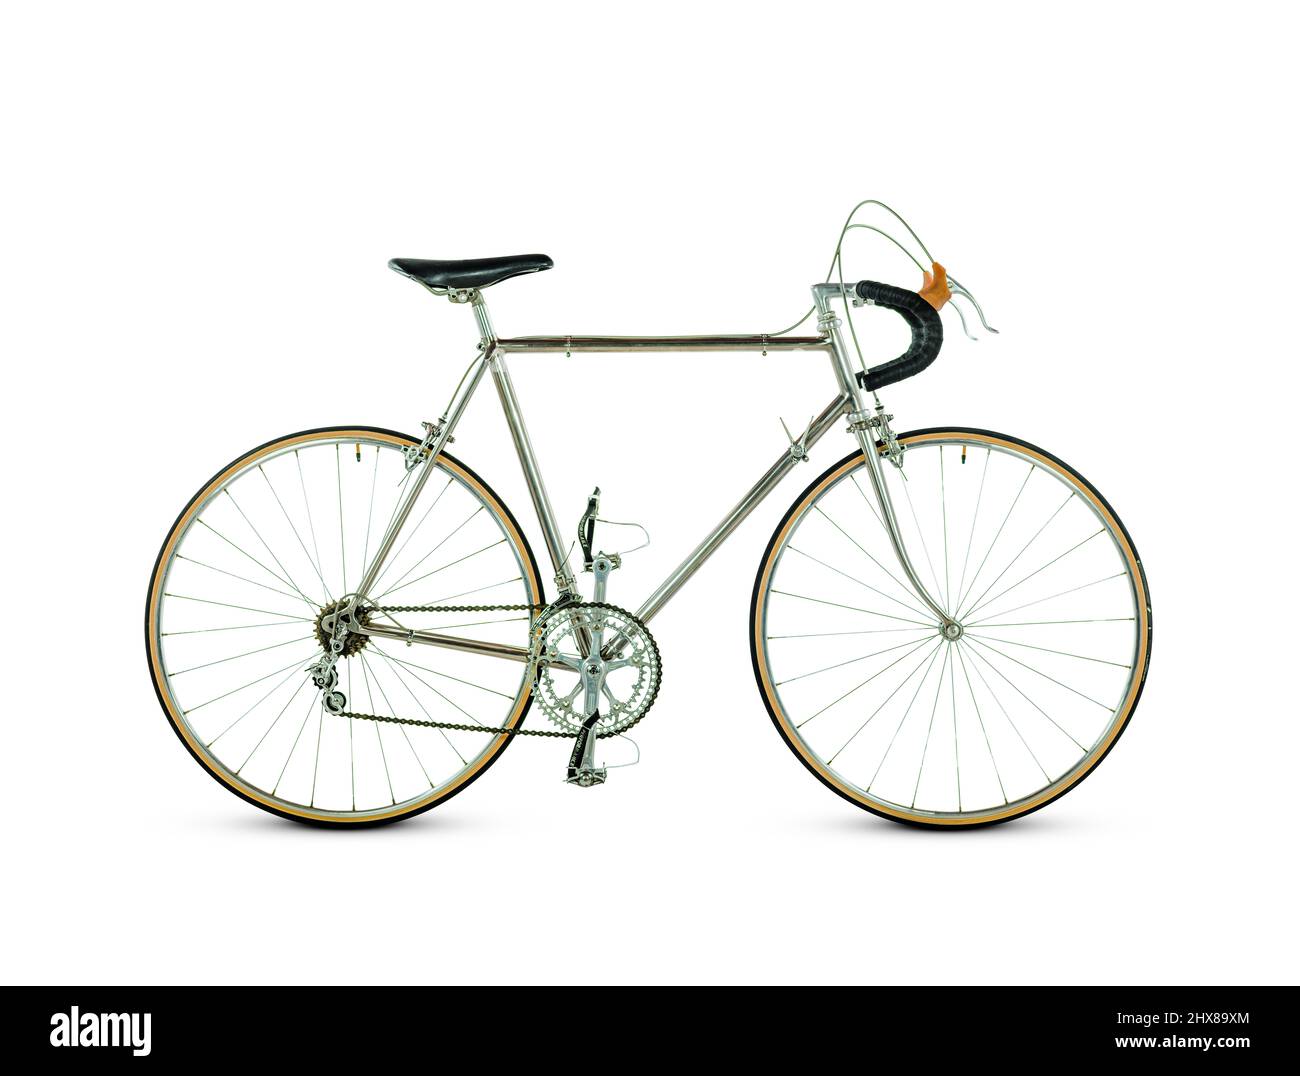 Schwinn Paramout Titanium, US, 1970, vue latérale, côté roue. Caractéristiques : un vélo expérimental, fabriqué dans une chambre à vide, avec soudage pré-teague (les soudures sont très lisses, pas de raccords de châssis) Banque D'Images